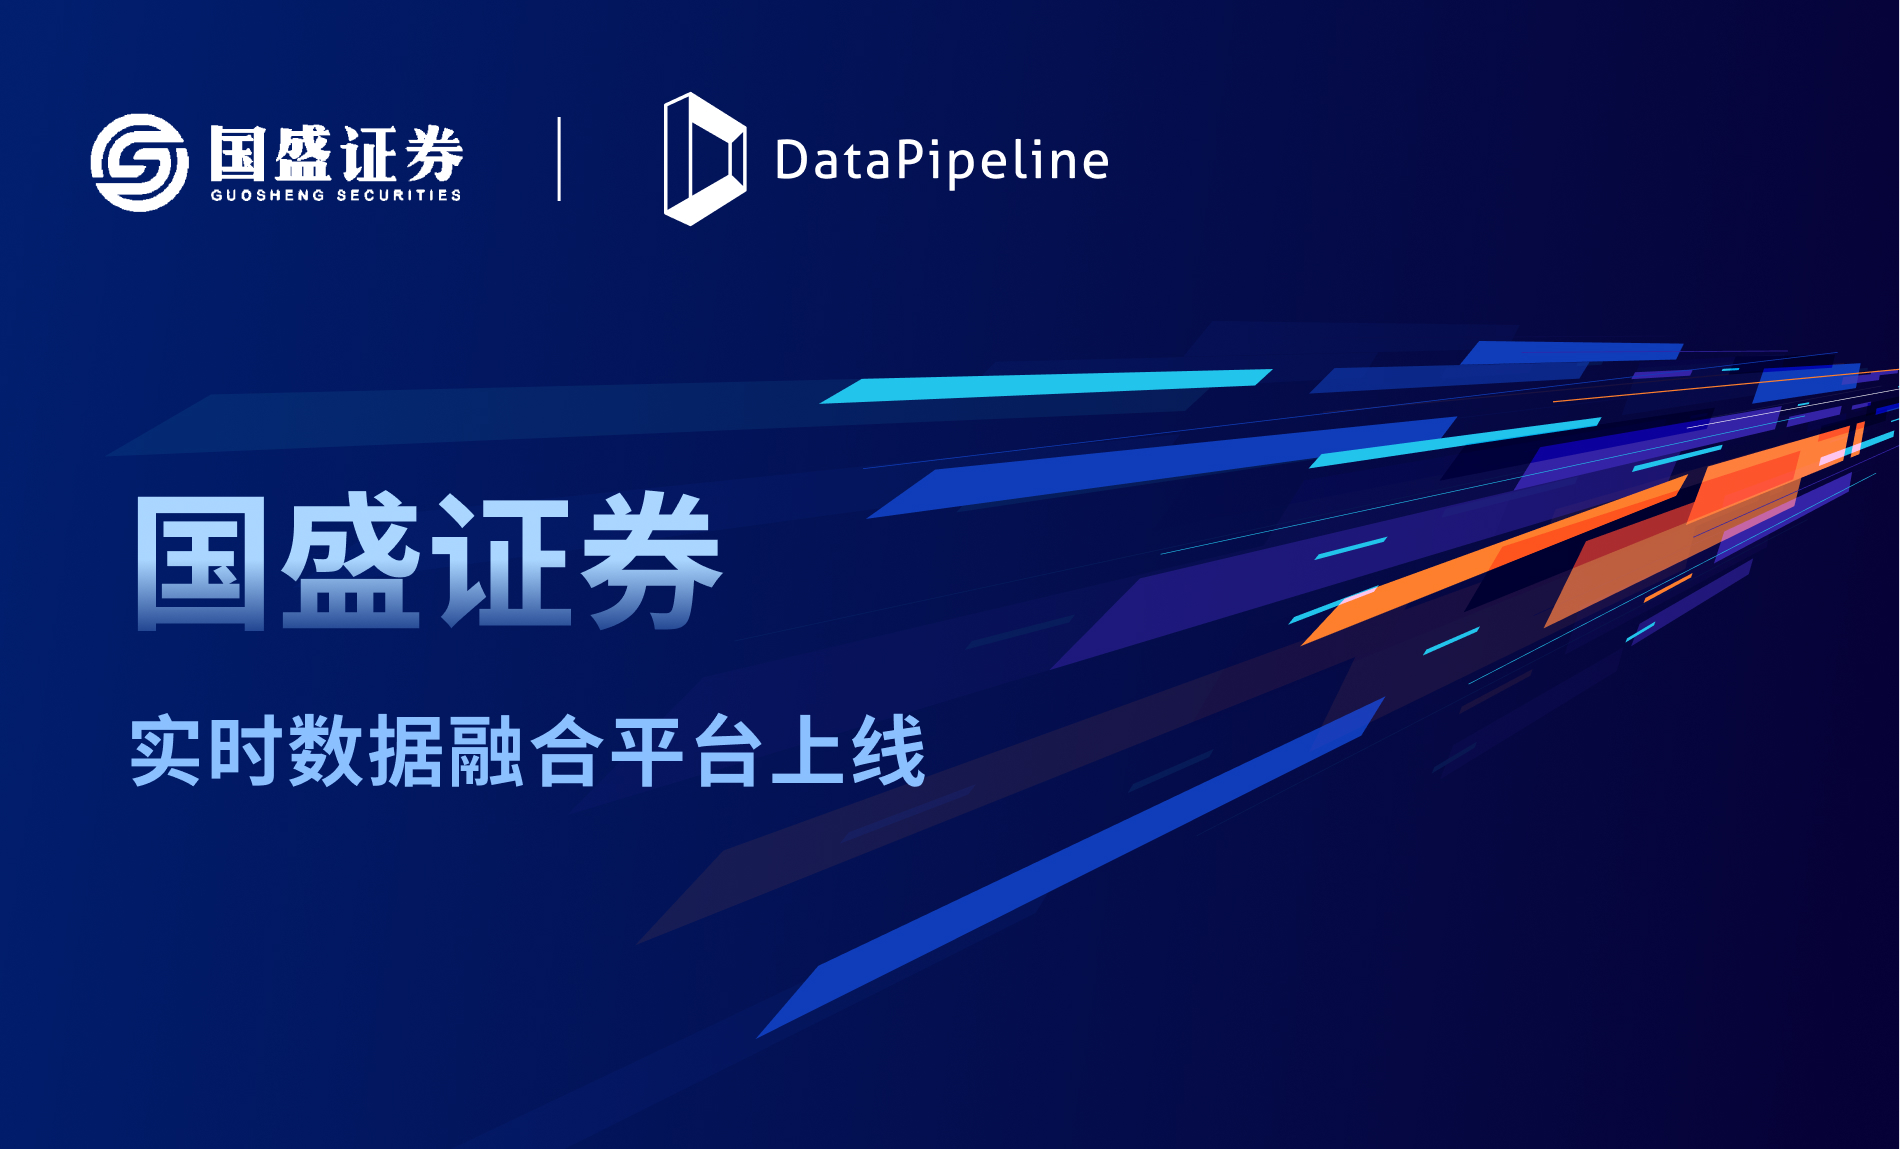 国盛证券携手DataPipeline打造实时数据融合平台，开启“以客户为中心”的数字化经营时代